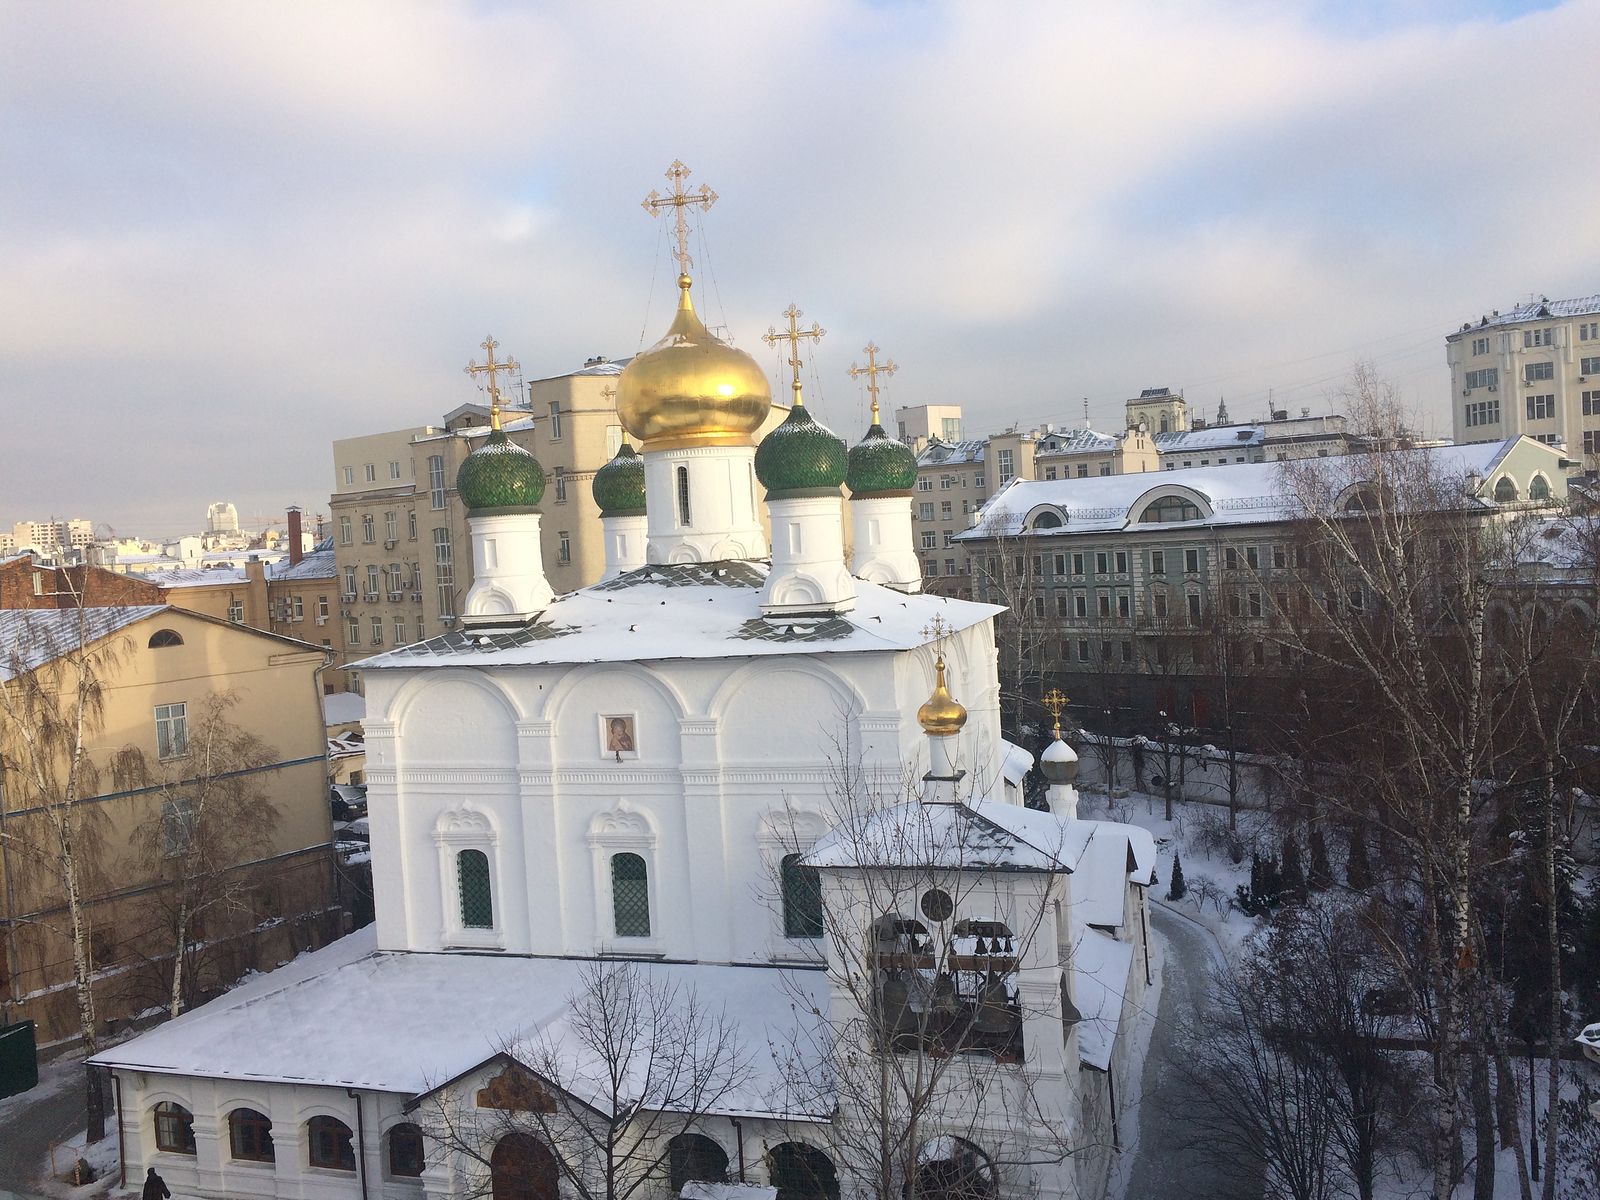 Сретенский монастырь в москве адрес